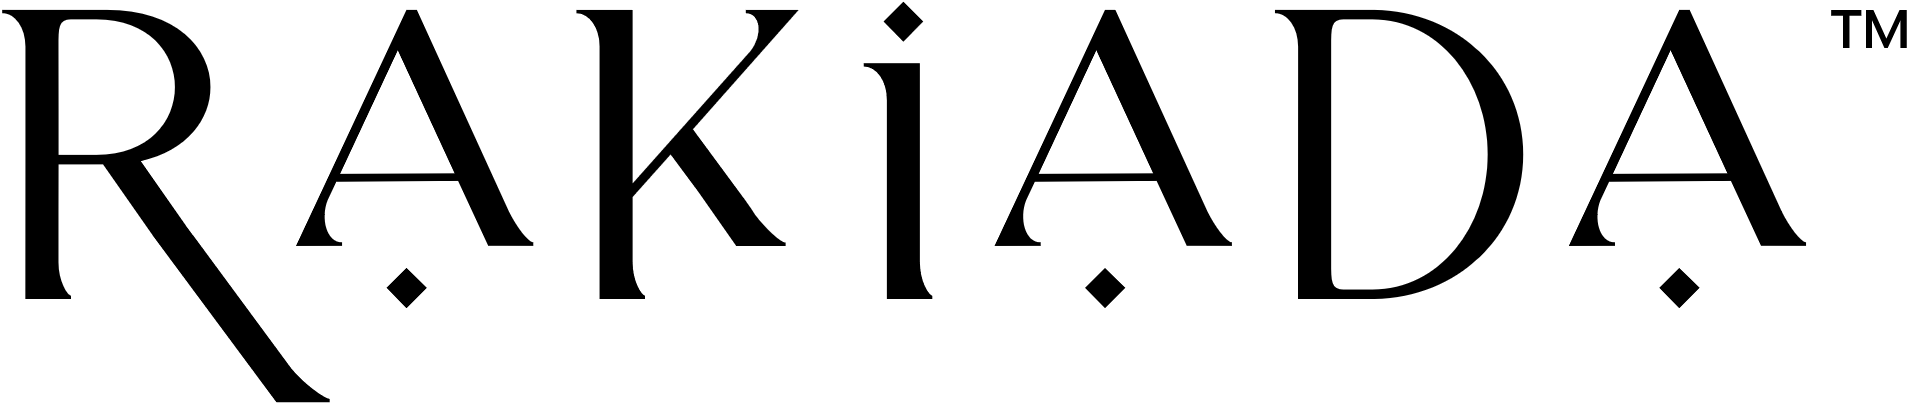 Rakiada logo